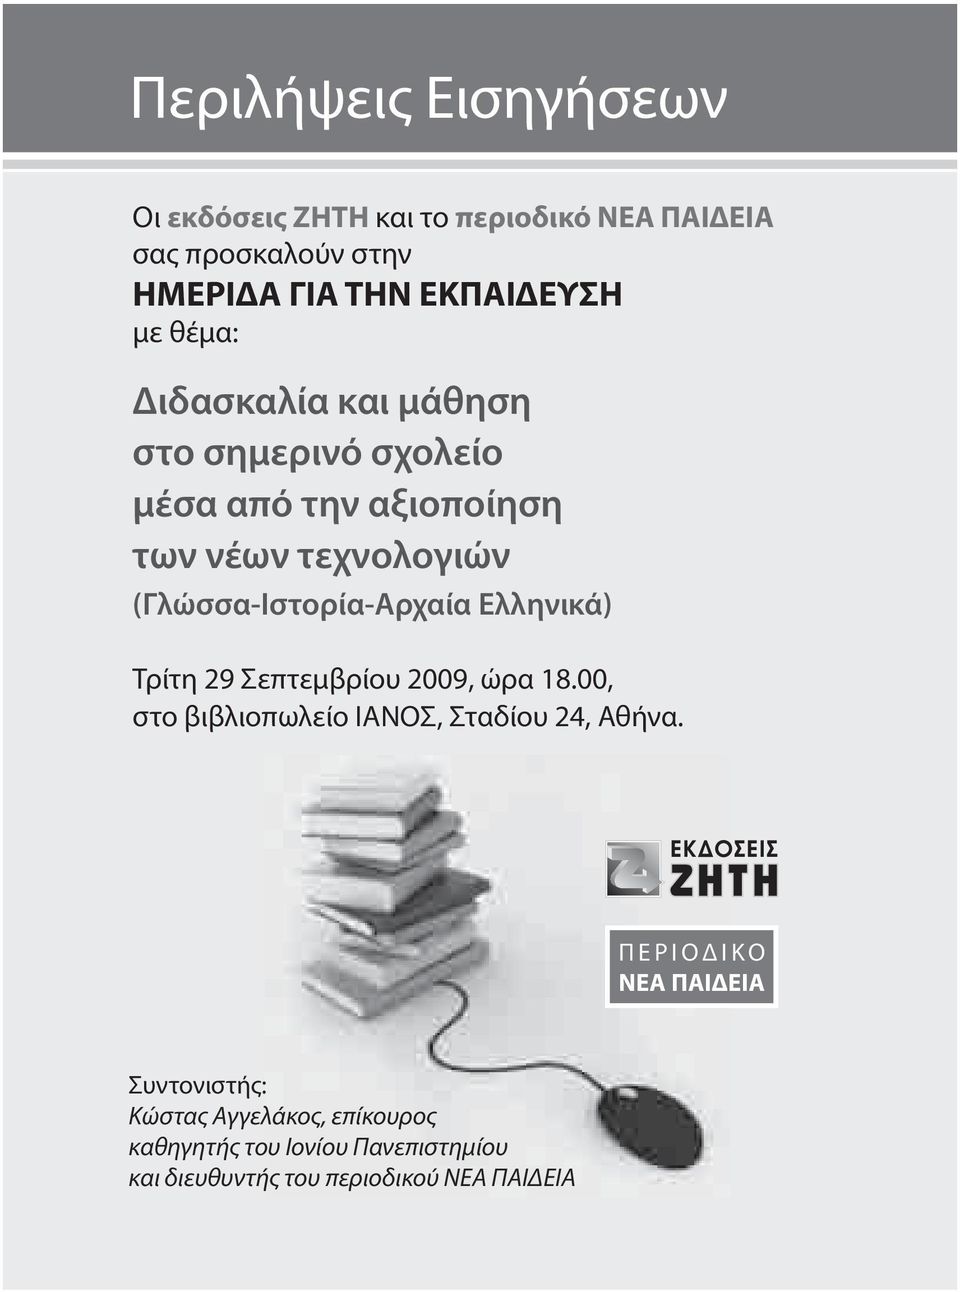 (Γλώσσα-Ιστορία-Αρχαία Ελληνικά) Τρίτη 29 Σεπτεμβρίου 2009, ώρα 18.00, στο βιβλιοπωλείο ΙΑΝΟΣ, Σταδίου 24, Αθήνα.